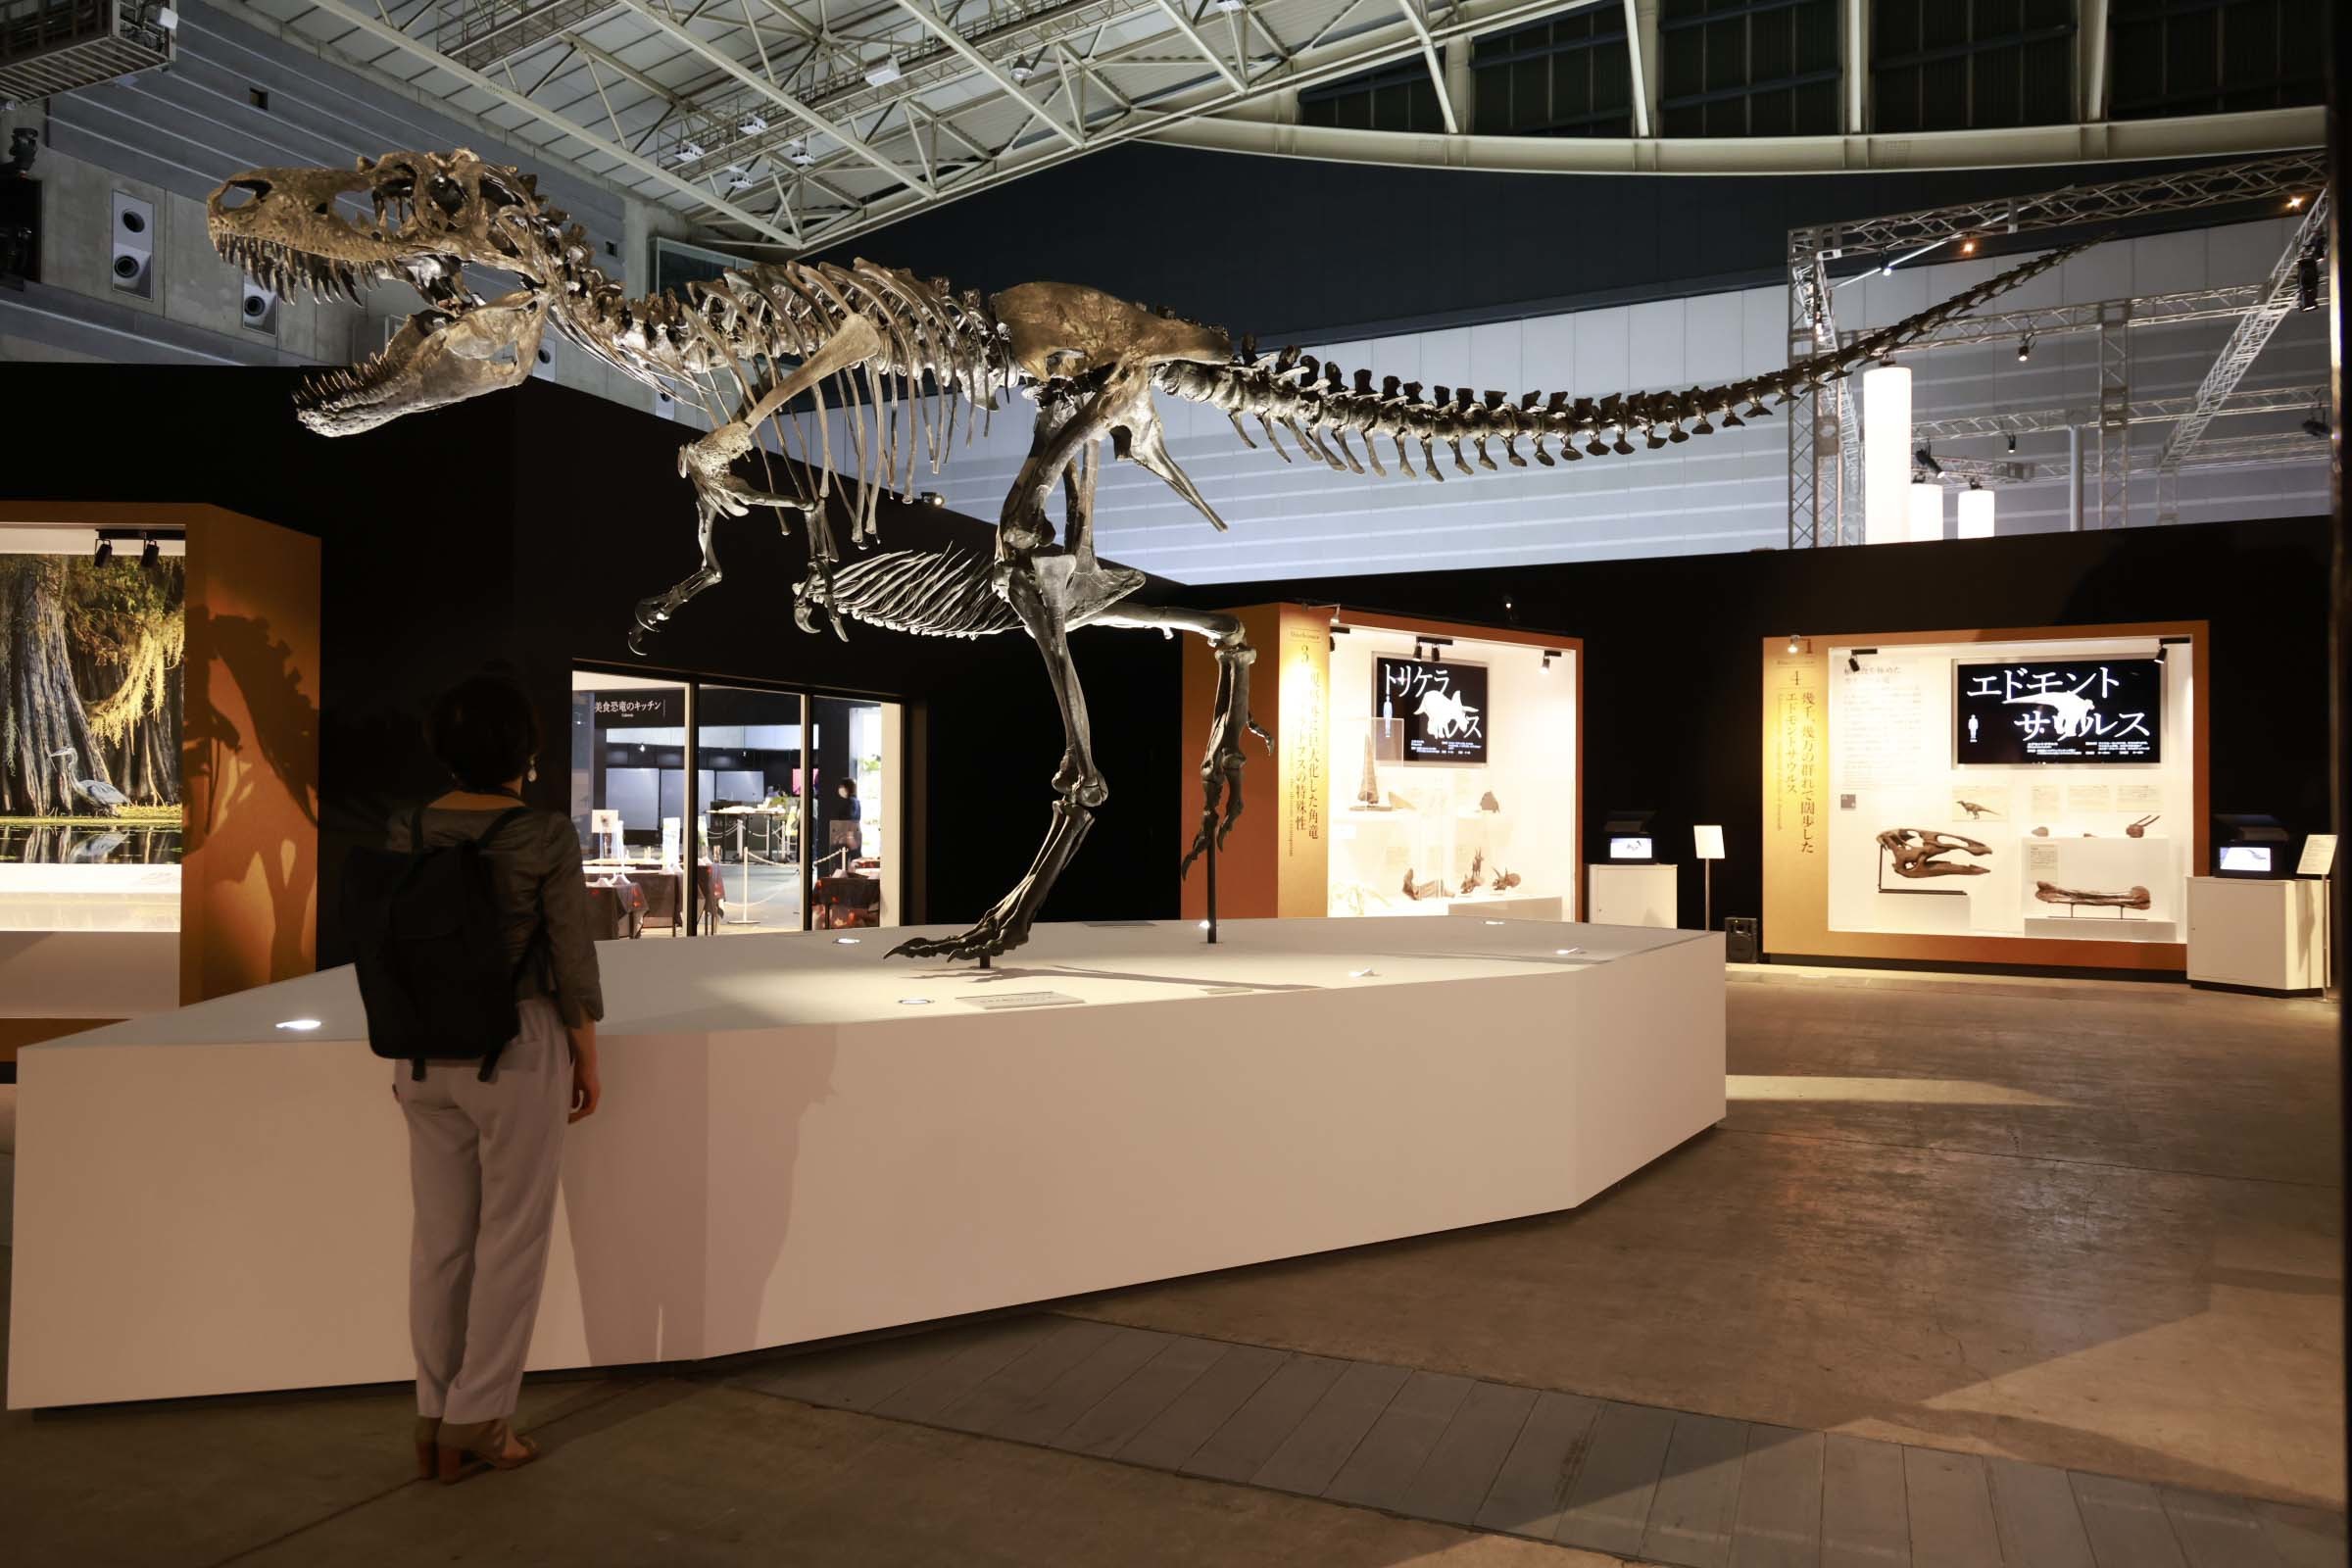 ゴルゴサウルスもまさか2021年の横浜に立つことになるなんて思ってもみなかっだろう